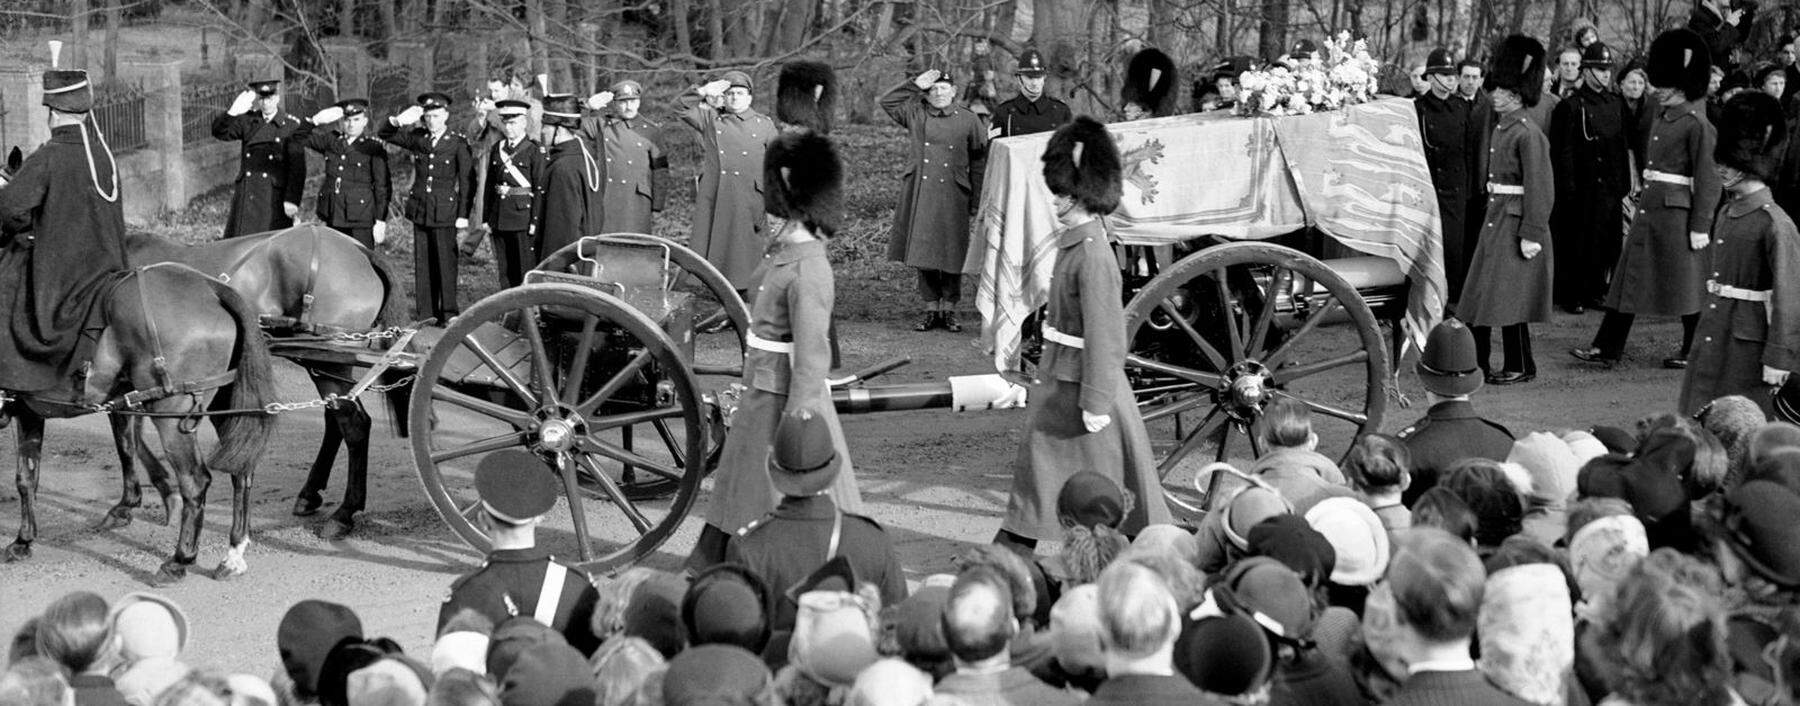 Das letzte Begräbnis eines regierenden Königs des Hauses Windsor fand vor mehr als 70 Jahren statt. Am 15. Februar 1952 wurde George VI., der Vater Elizabeths II., beerdigt.